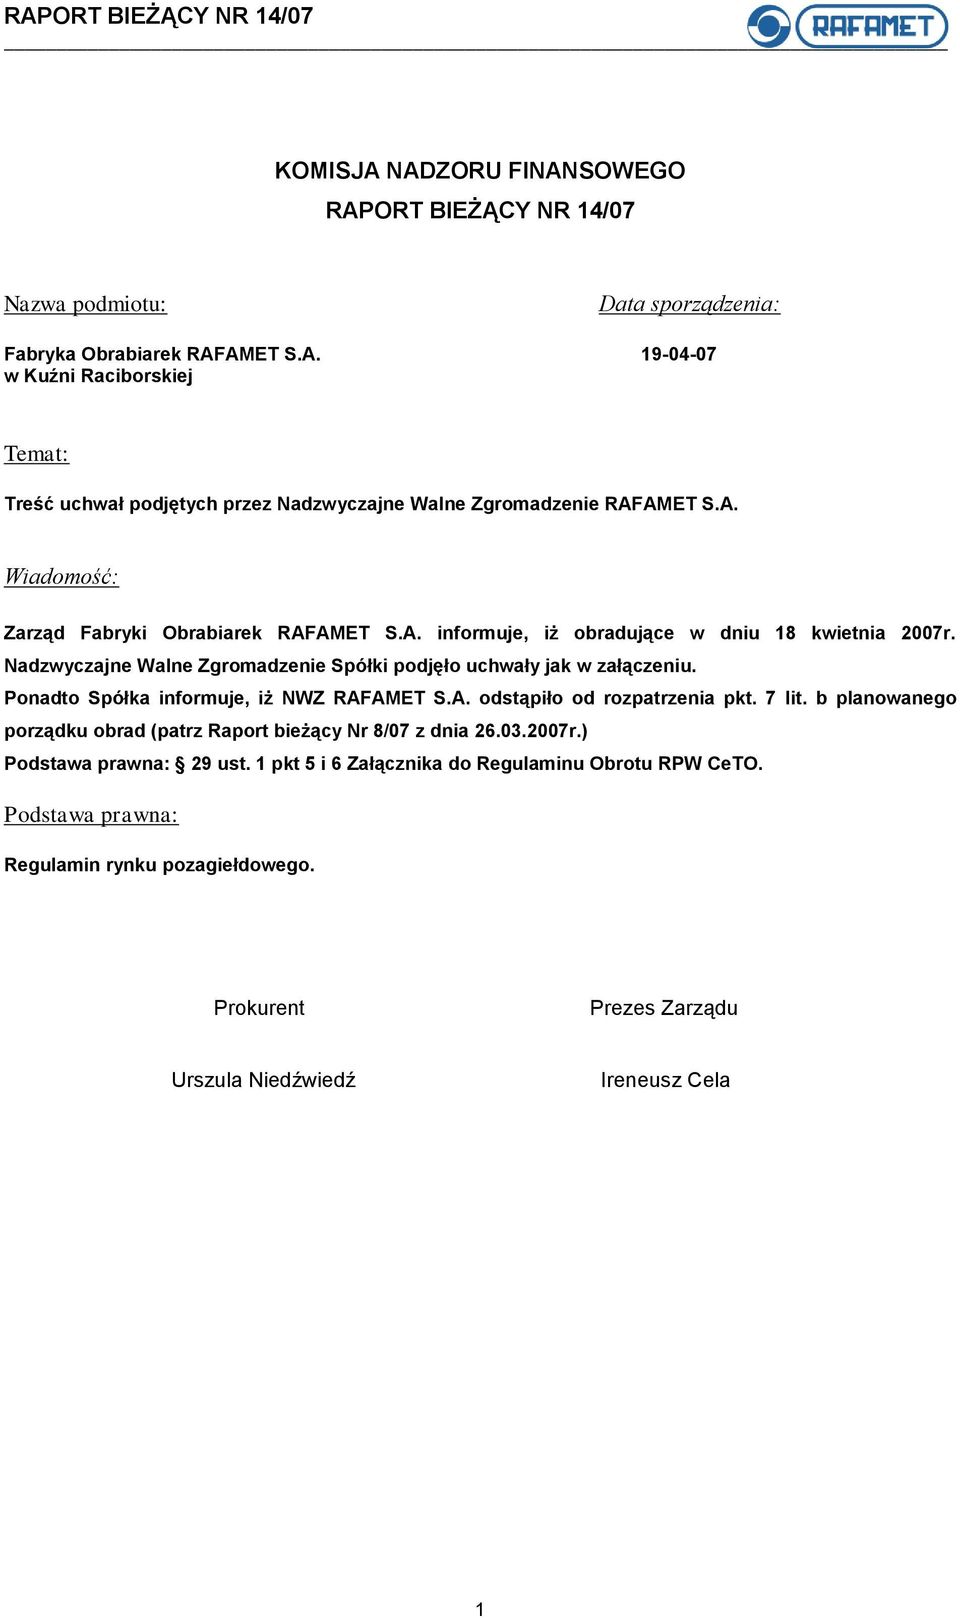 Ponadto Spółka informuje, iż NWZ RAFAMET S.A. odstąpiło od rozpatrzenia pkt. 7 lit. b planowanego porządku obrad (patrz Raport bieżący Nr 8/07 z dnia 26.03.2007r.